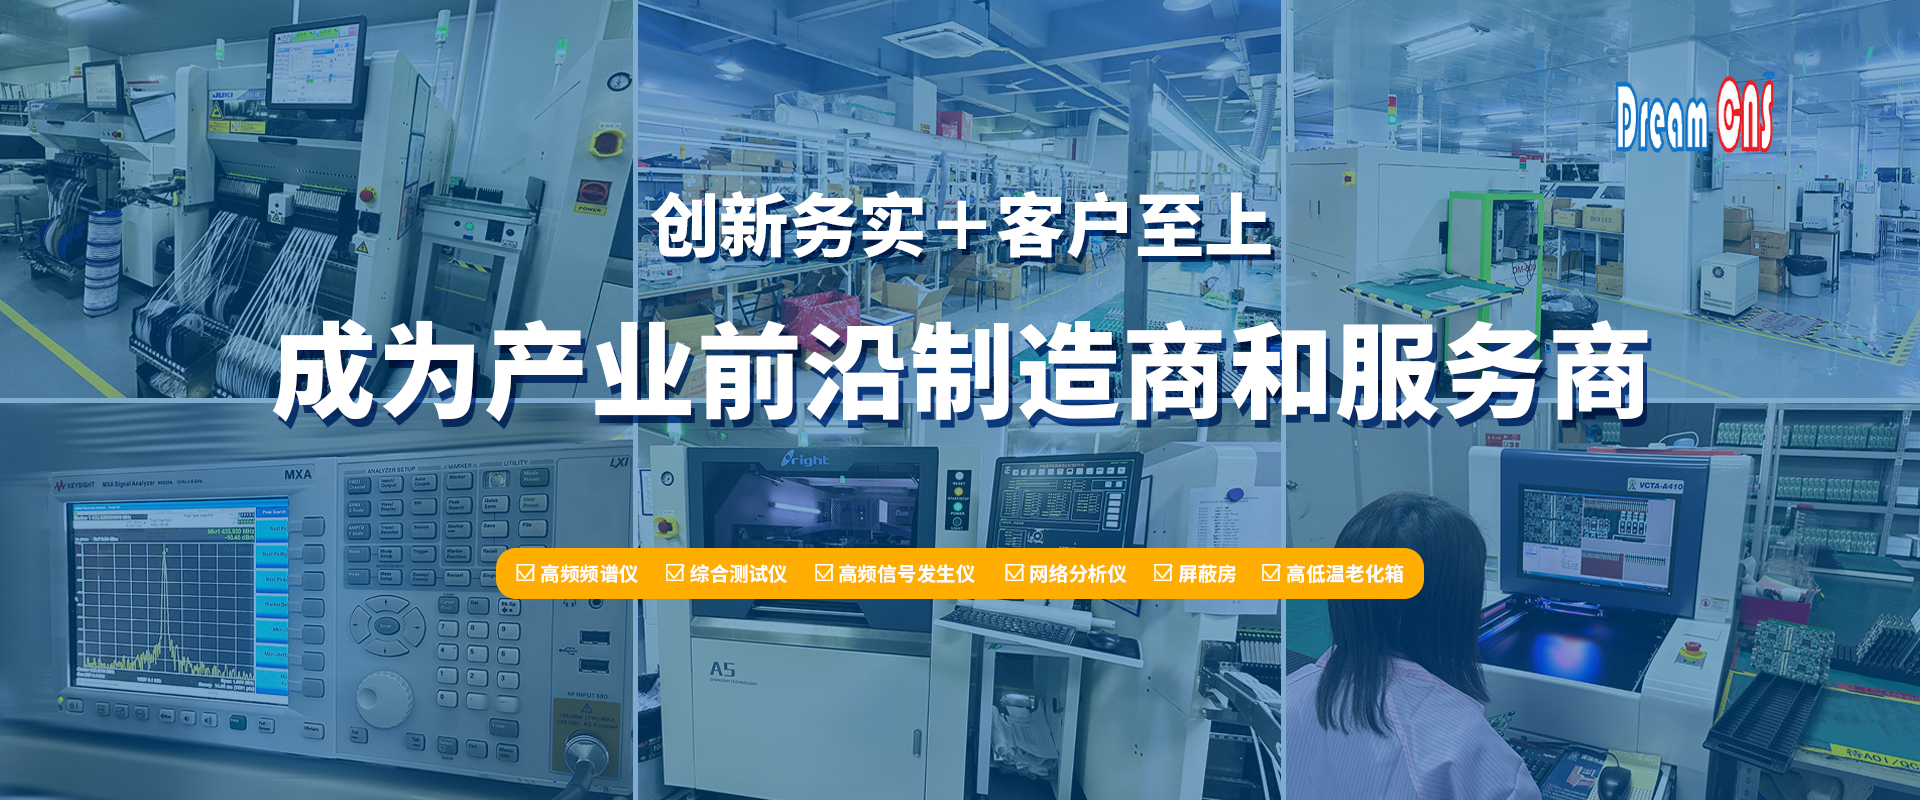 深圳市创新星电子科技有限公司